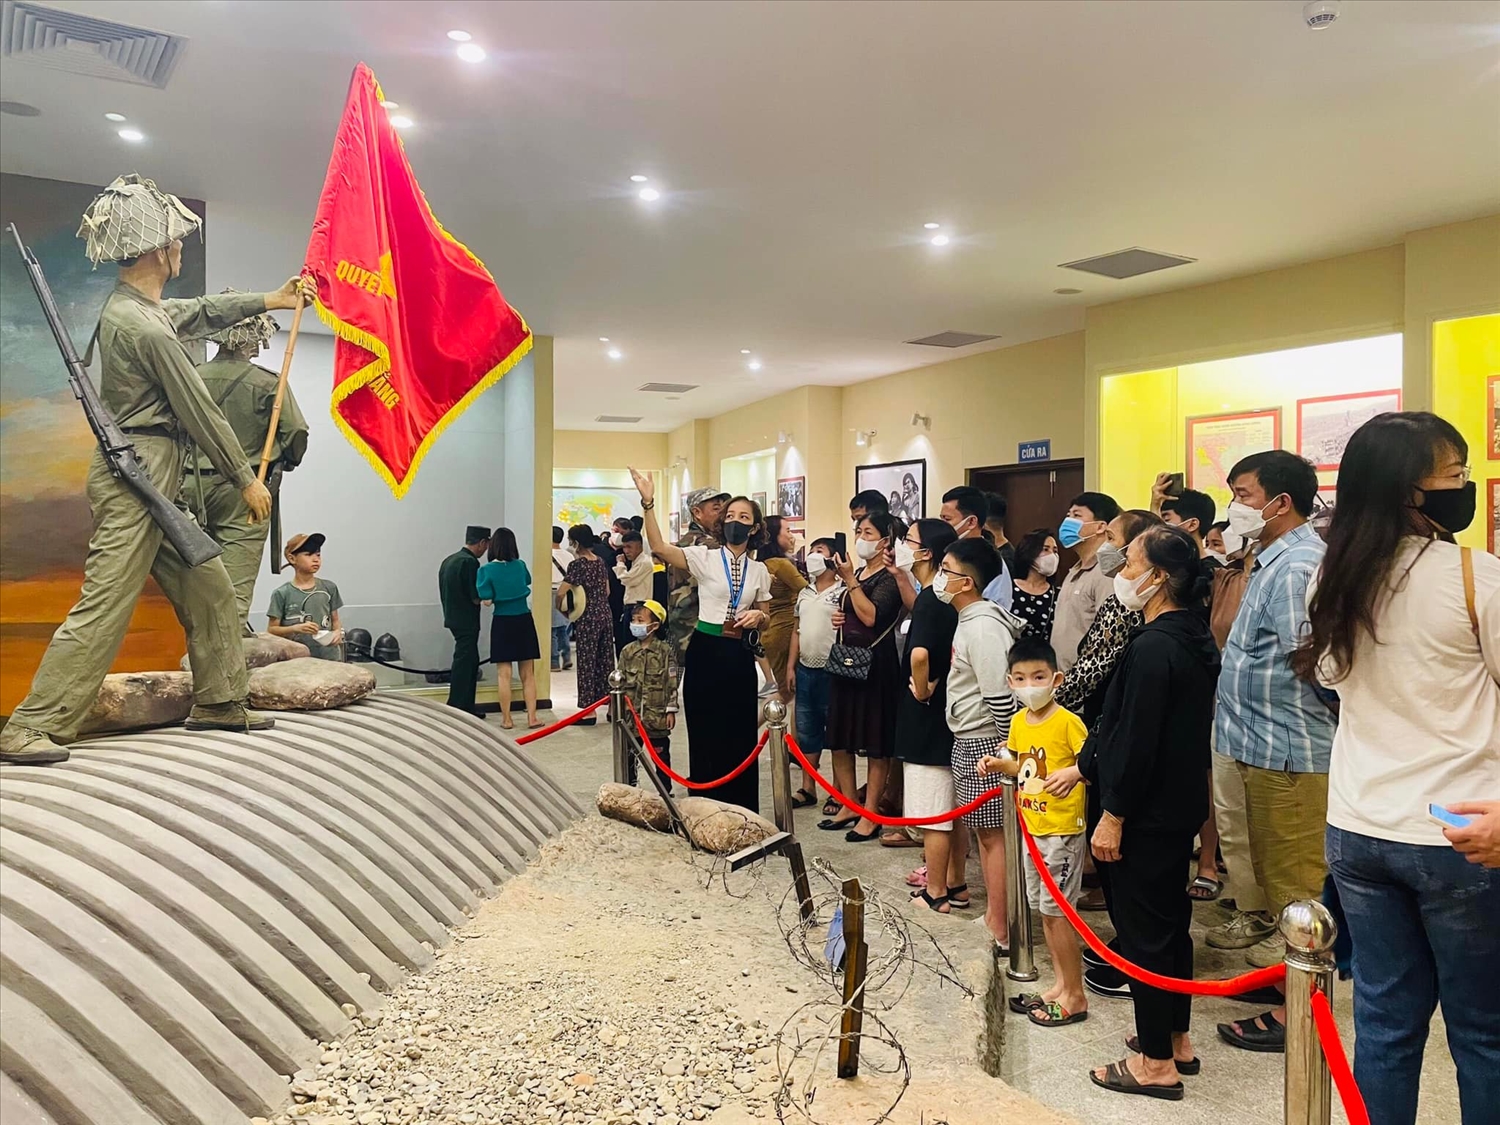  Đông đảo người dân đến với Bảo tàng nhân ngày kỷ niệm Chiến thắng Điện Biên phủ